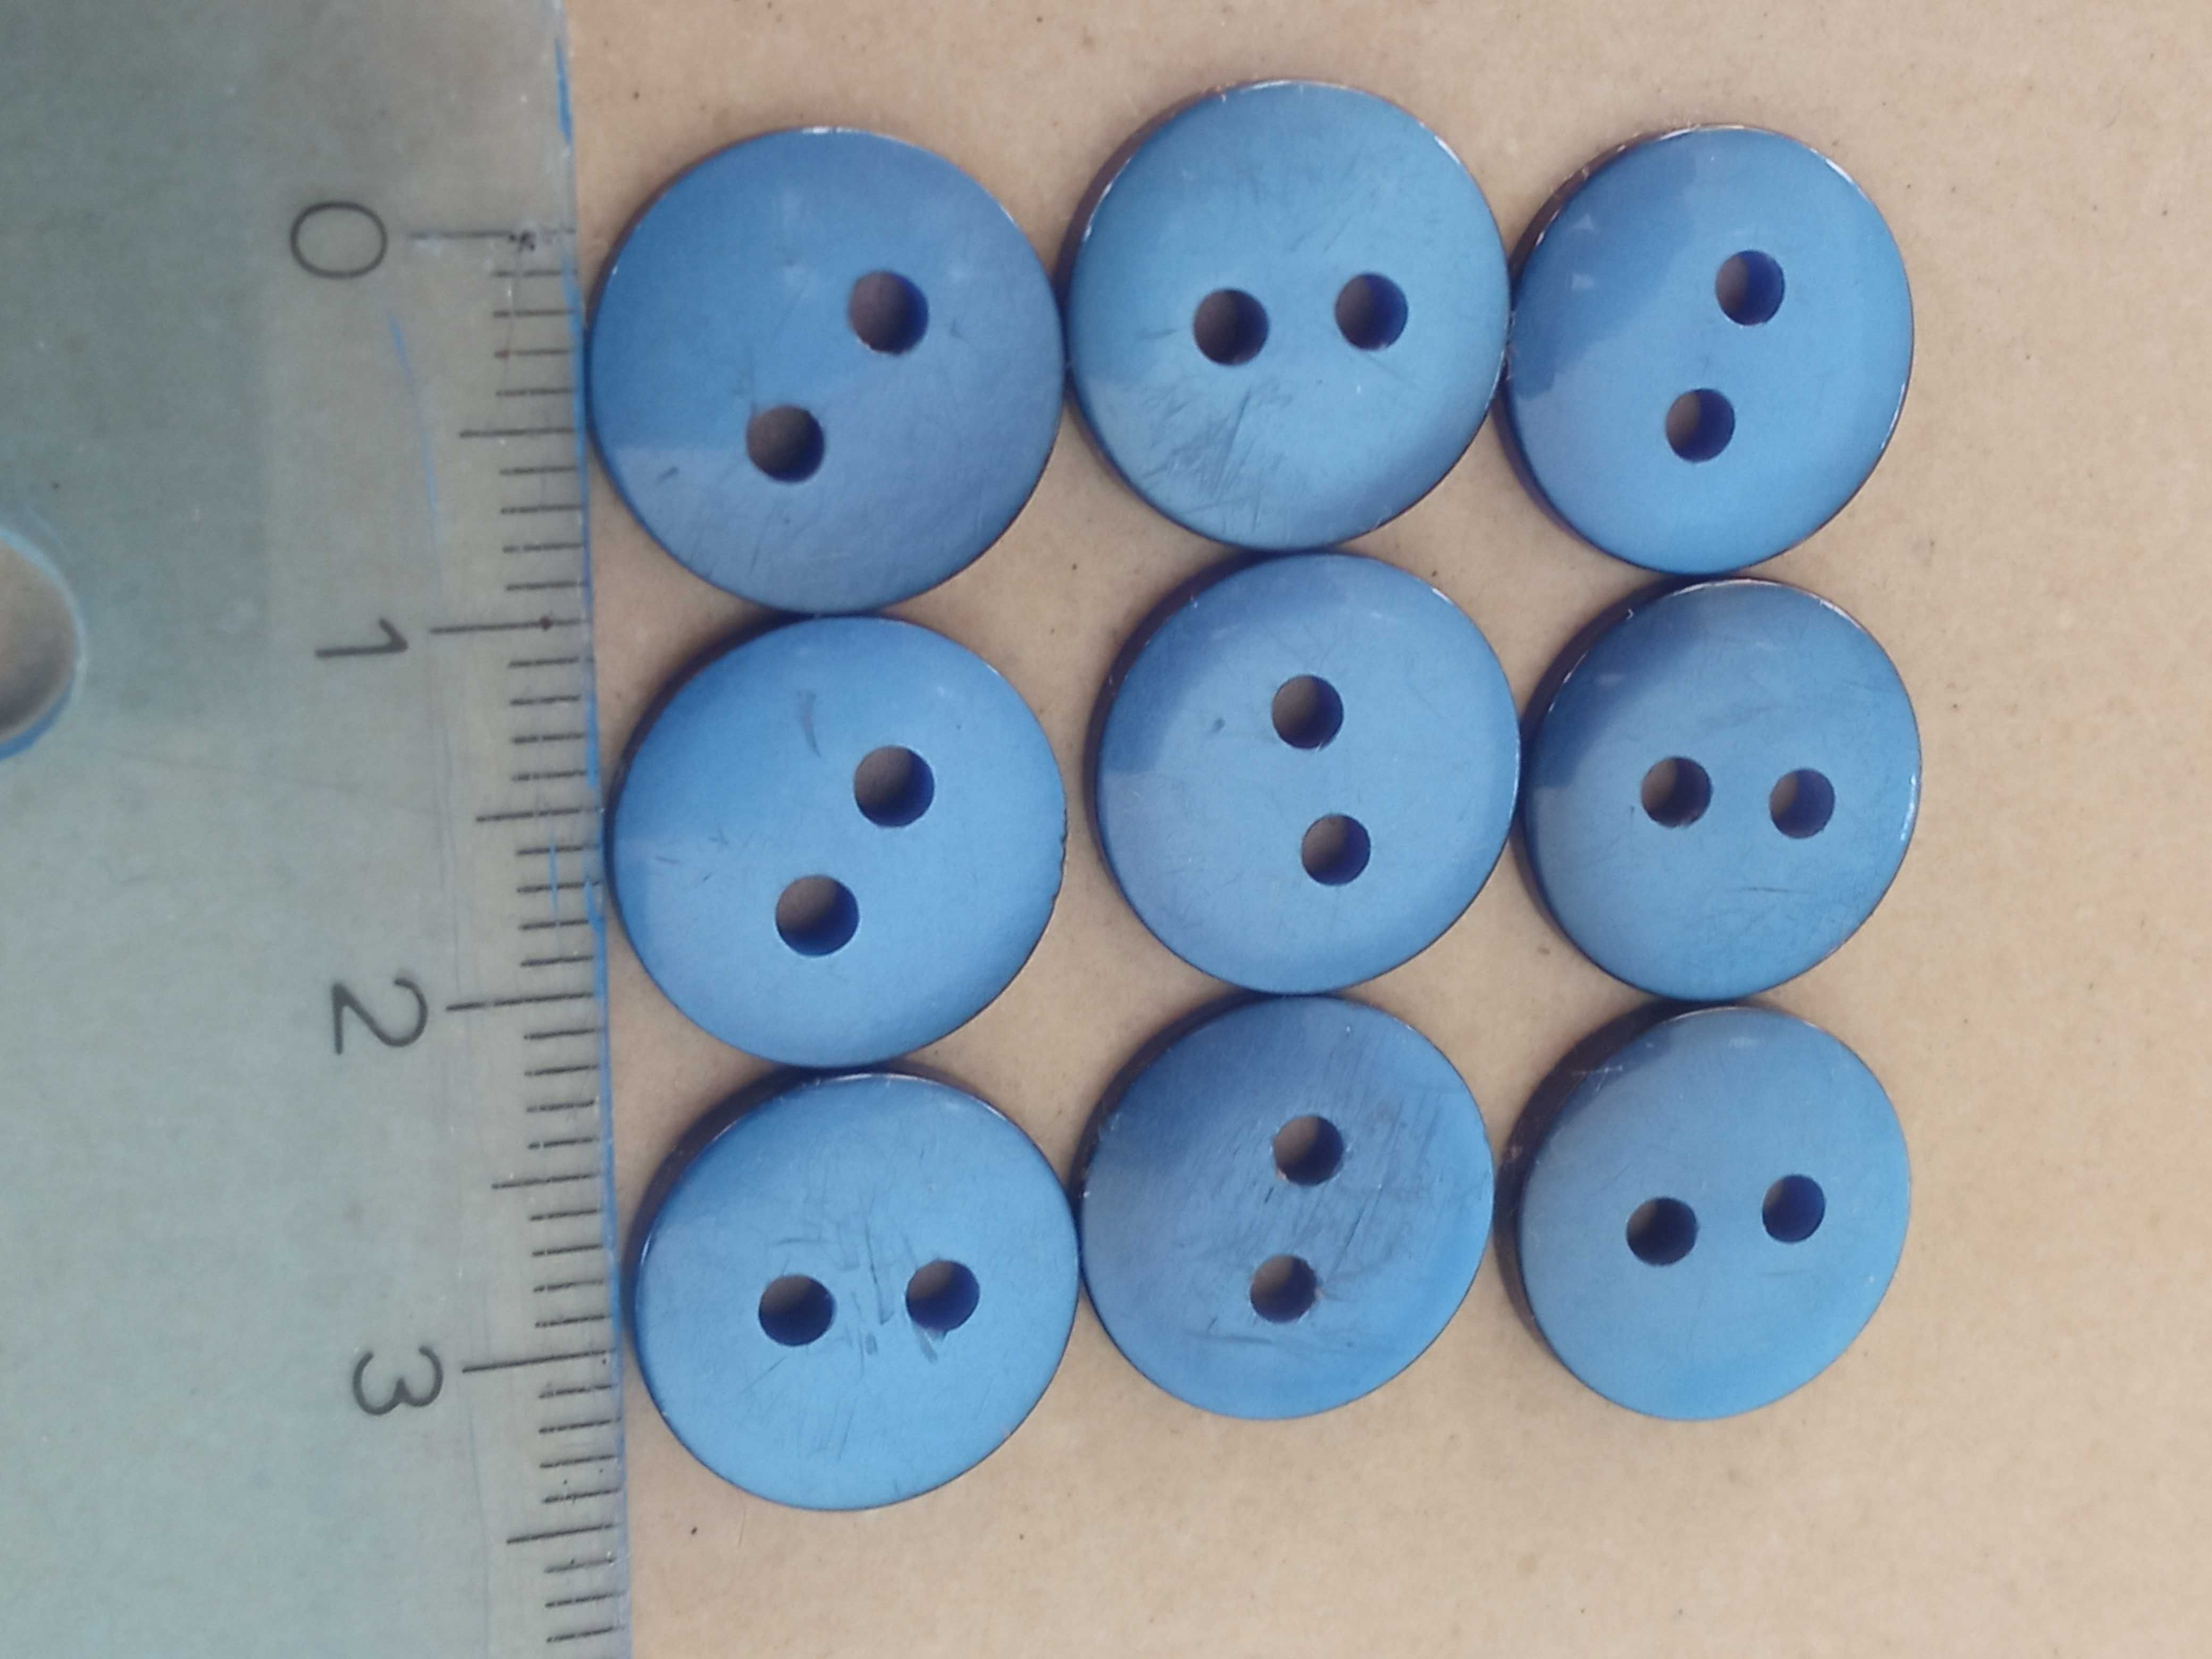 Guziki 9 szt dwie dziurki niebieskie średnica 1,3 cm Guzik niebieski